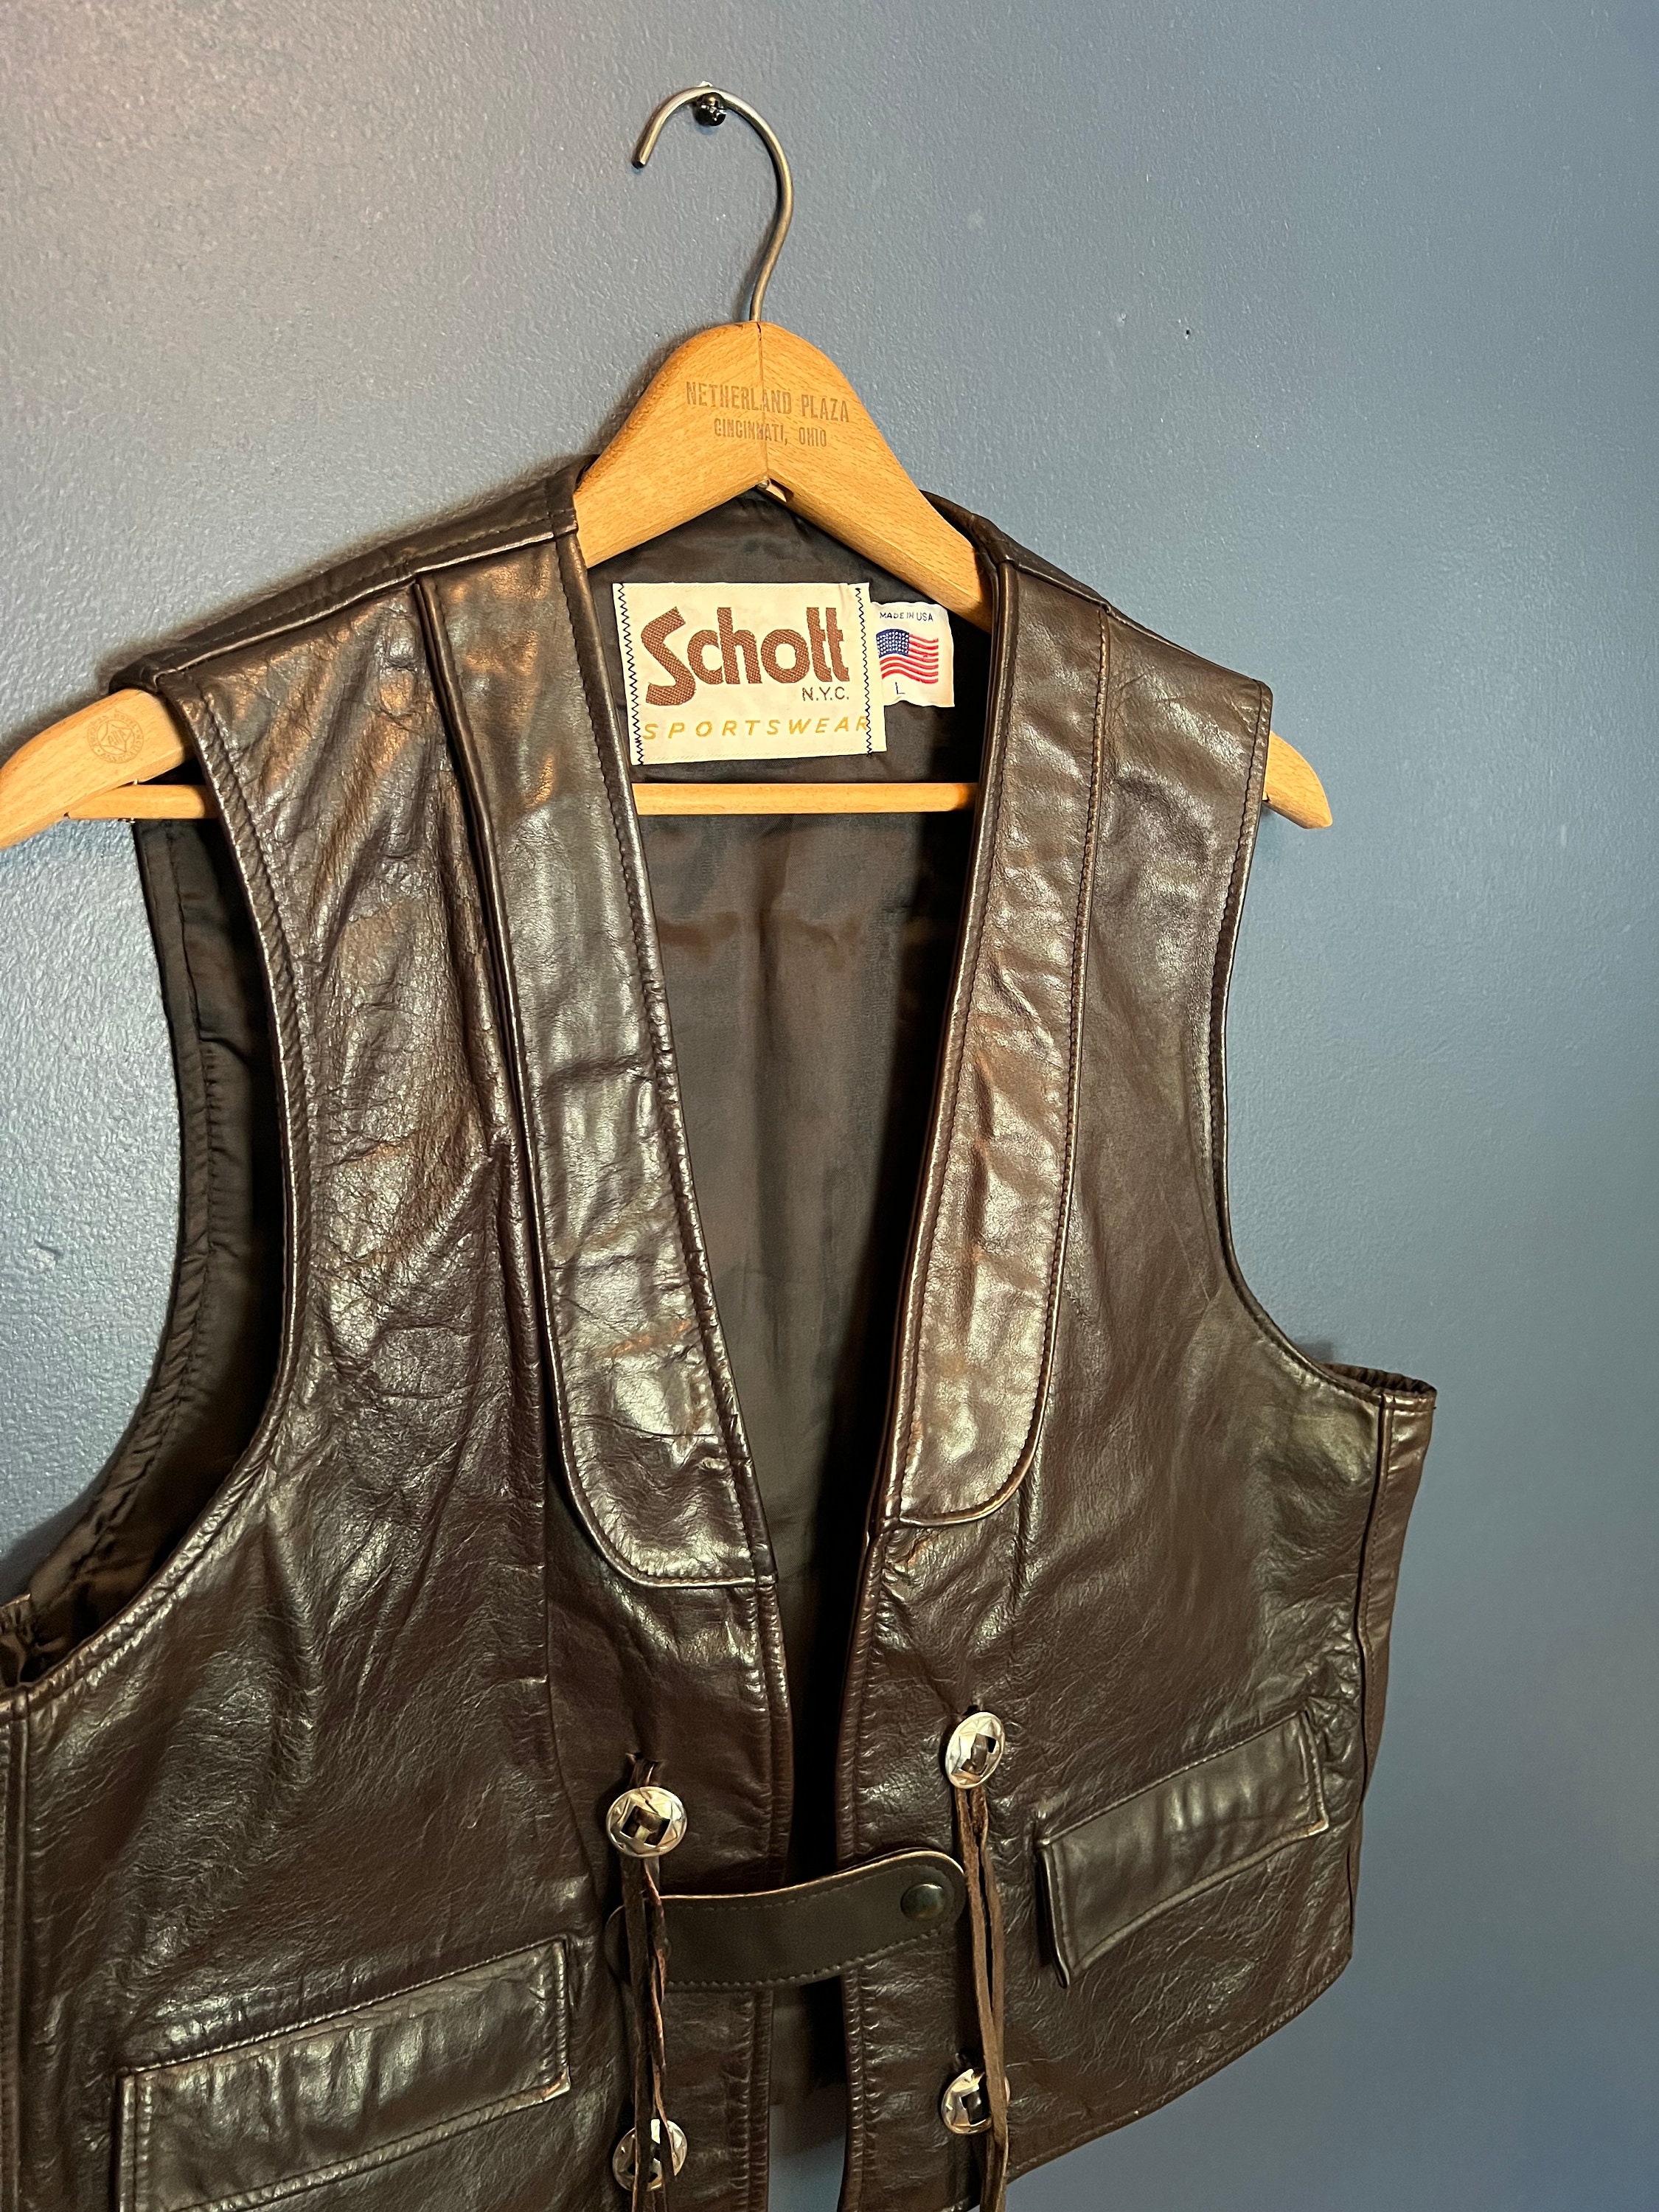 Las mejores ofertas en Schott NYC abrigos, chaquetas y chalecos para hombres